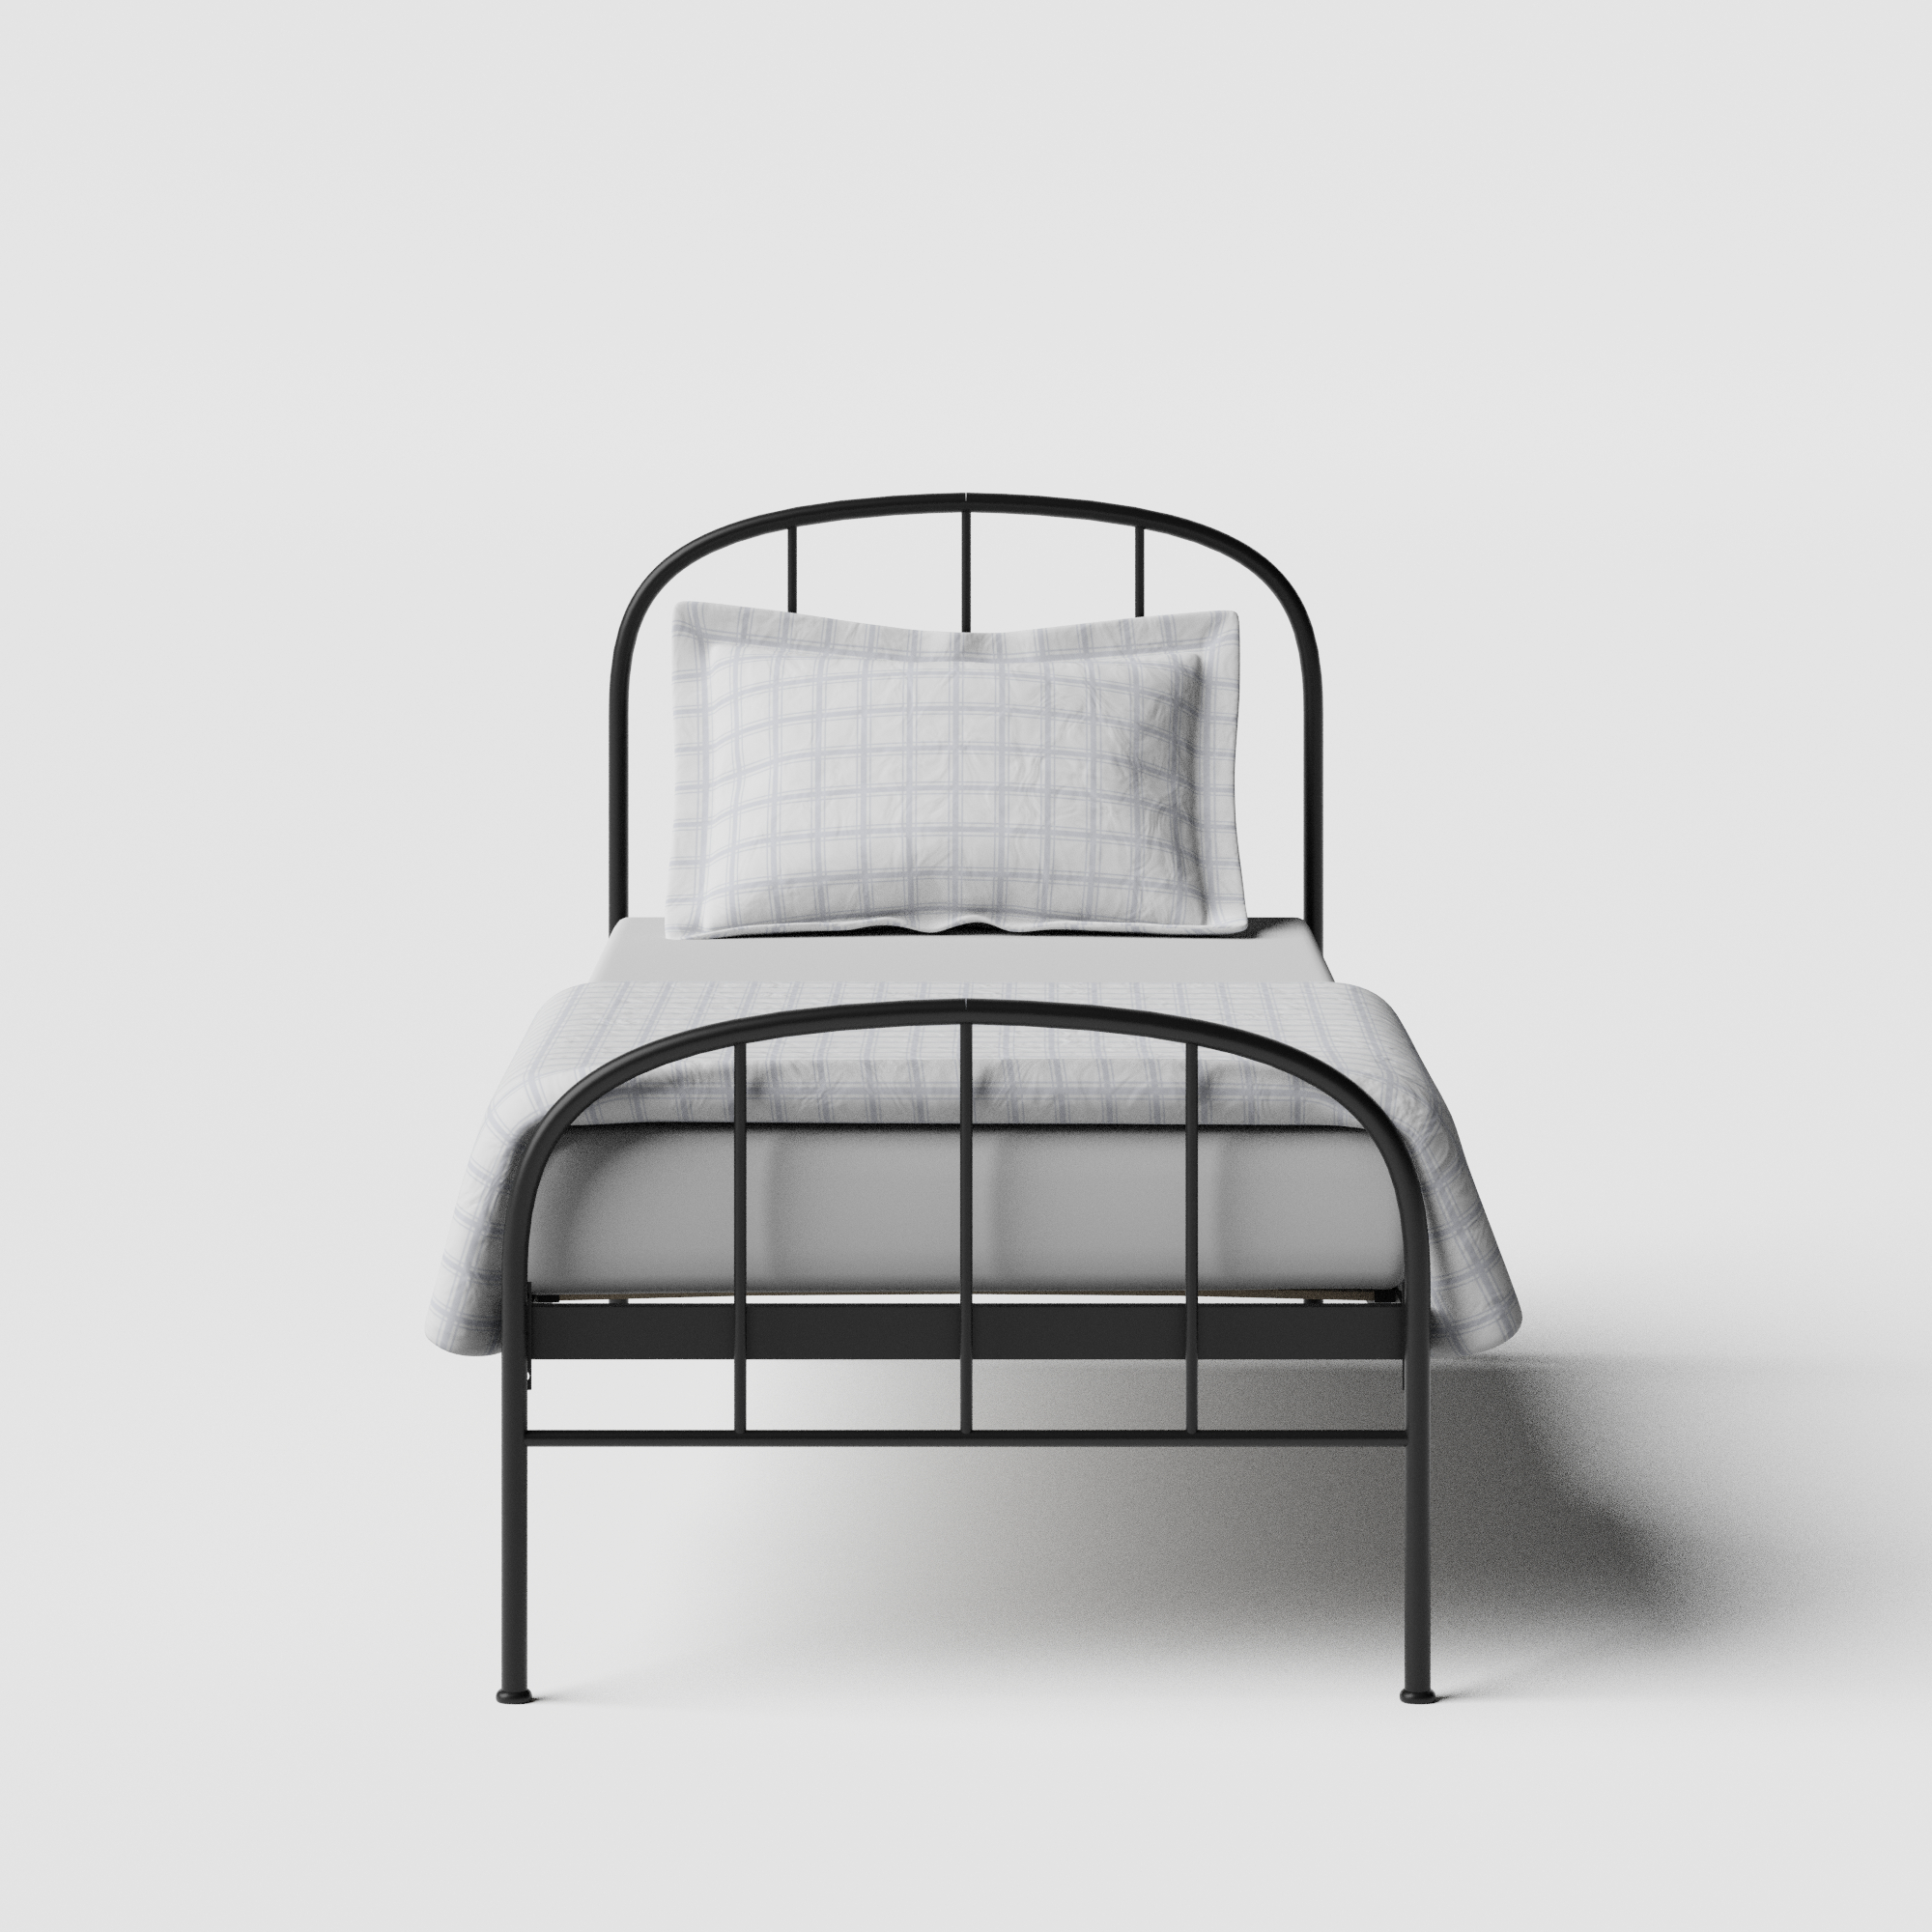 Waldo iron/metal single bed in black